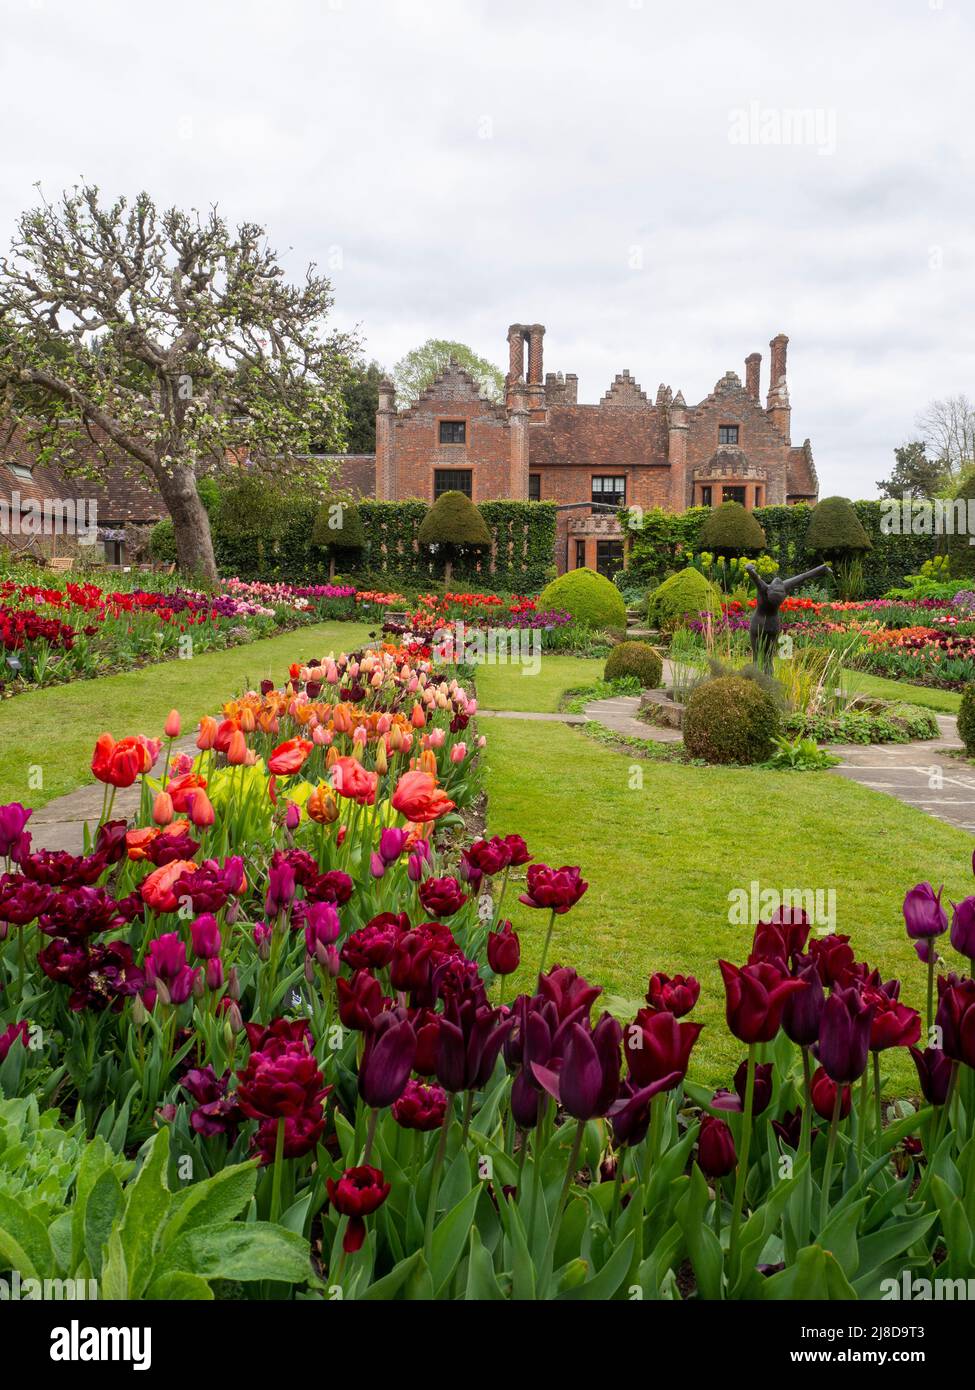 Chenies Manor Garden.Portrait view of the beautiful Sunken garden with many tulip varieties. Stock Photo